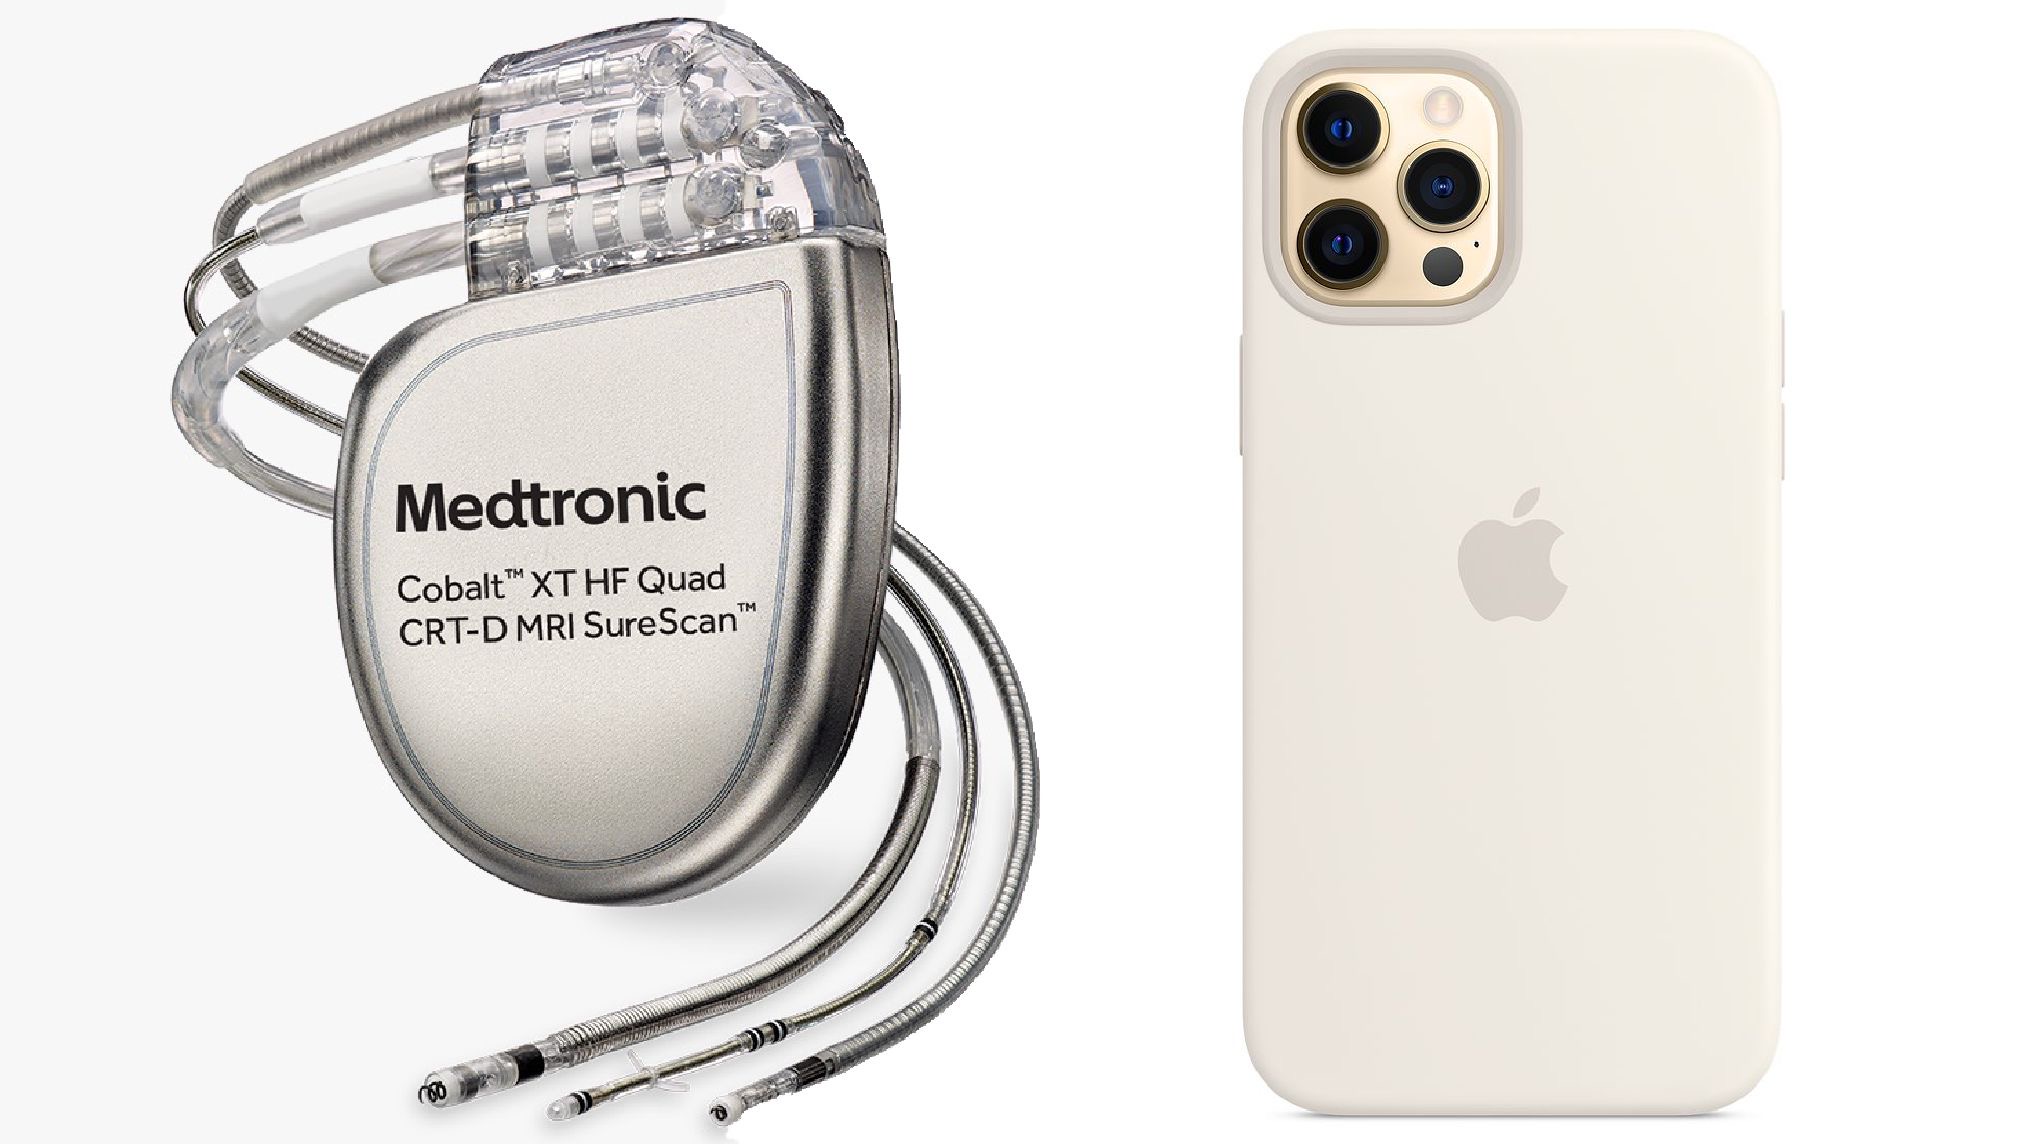 Az iPhone 12 leállíthatja a szívbe ültetett defibrillátort